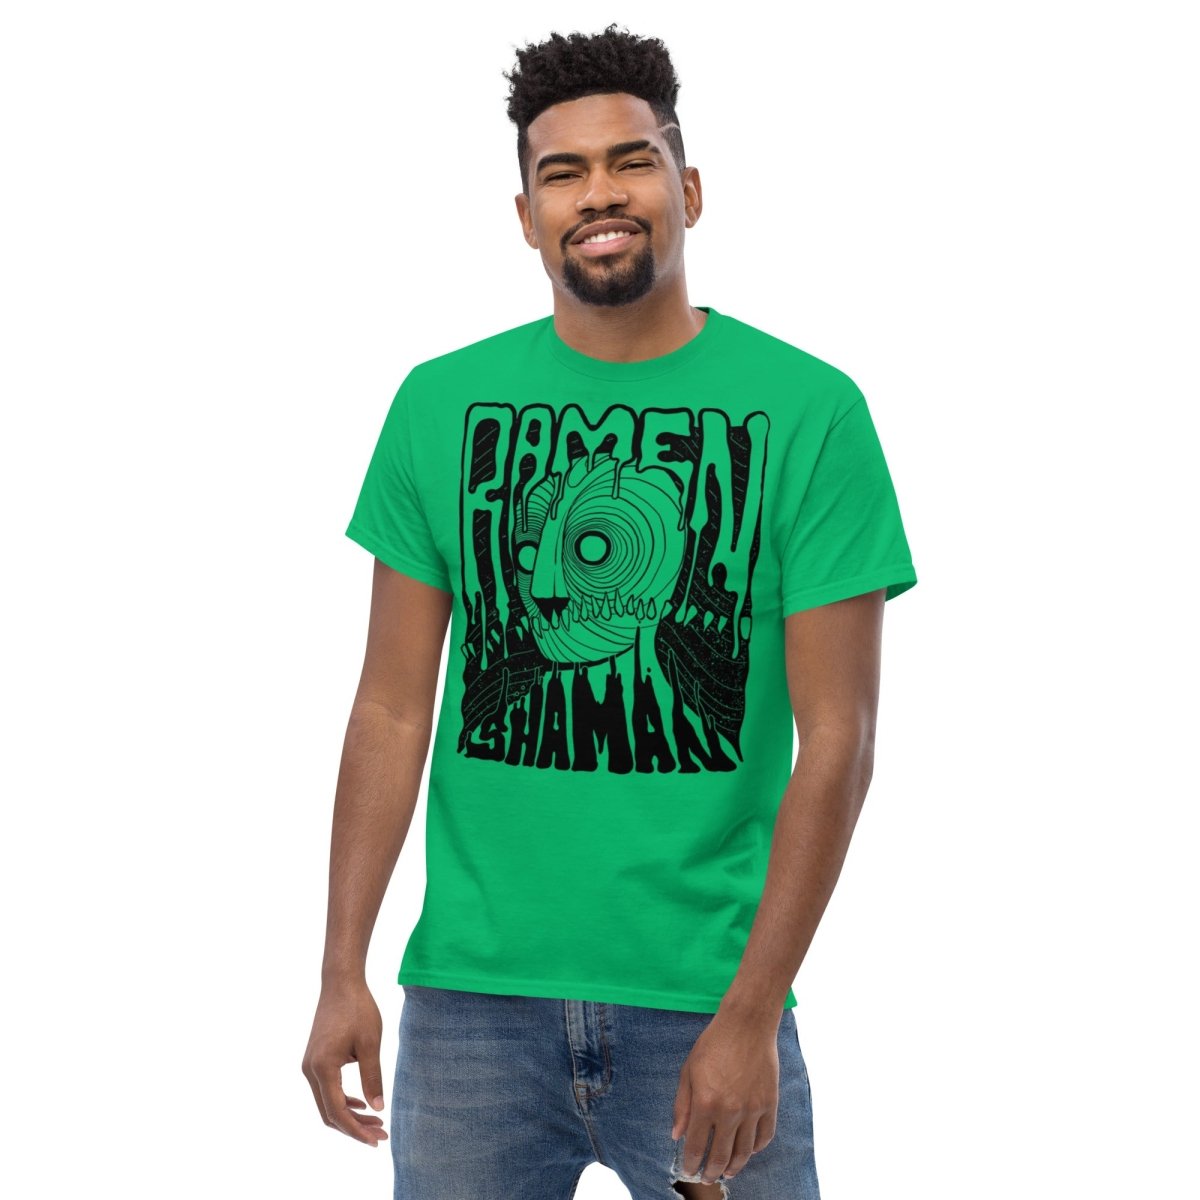 Ramen Shaman Trauma Shirt - Ramen Shaman Art